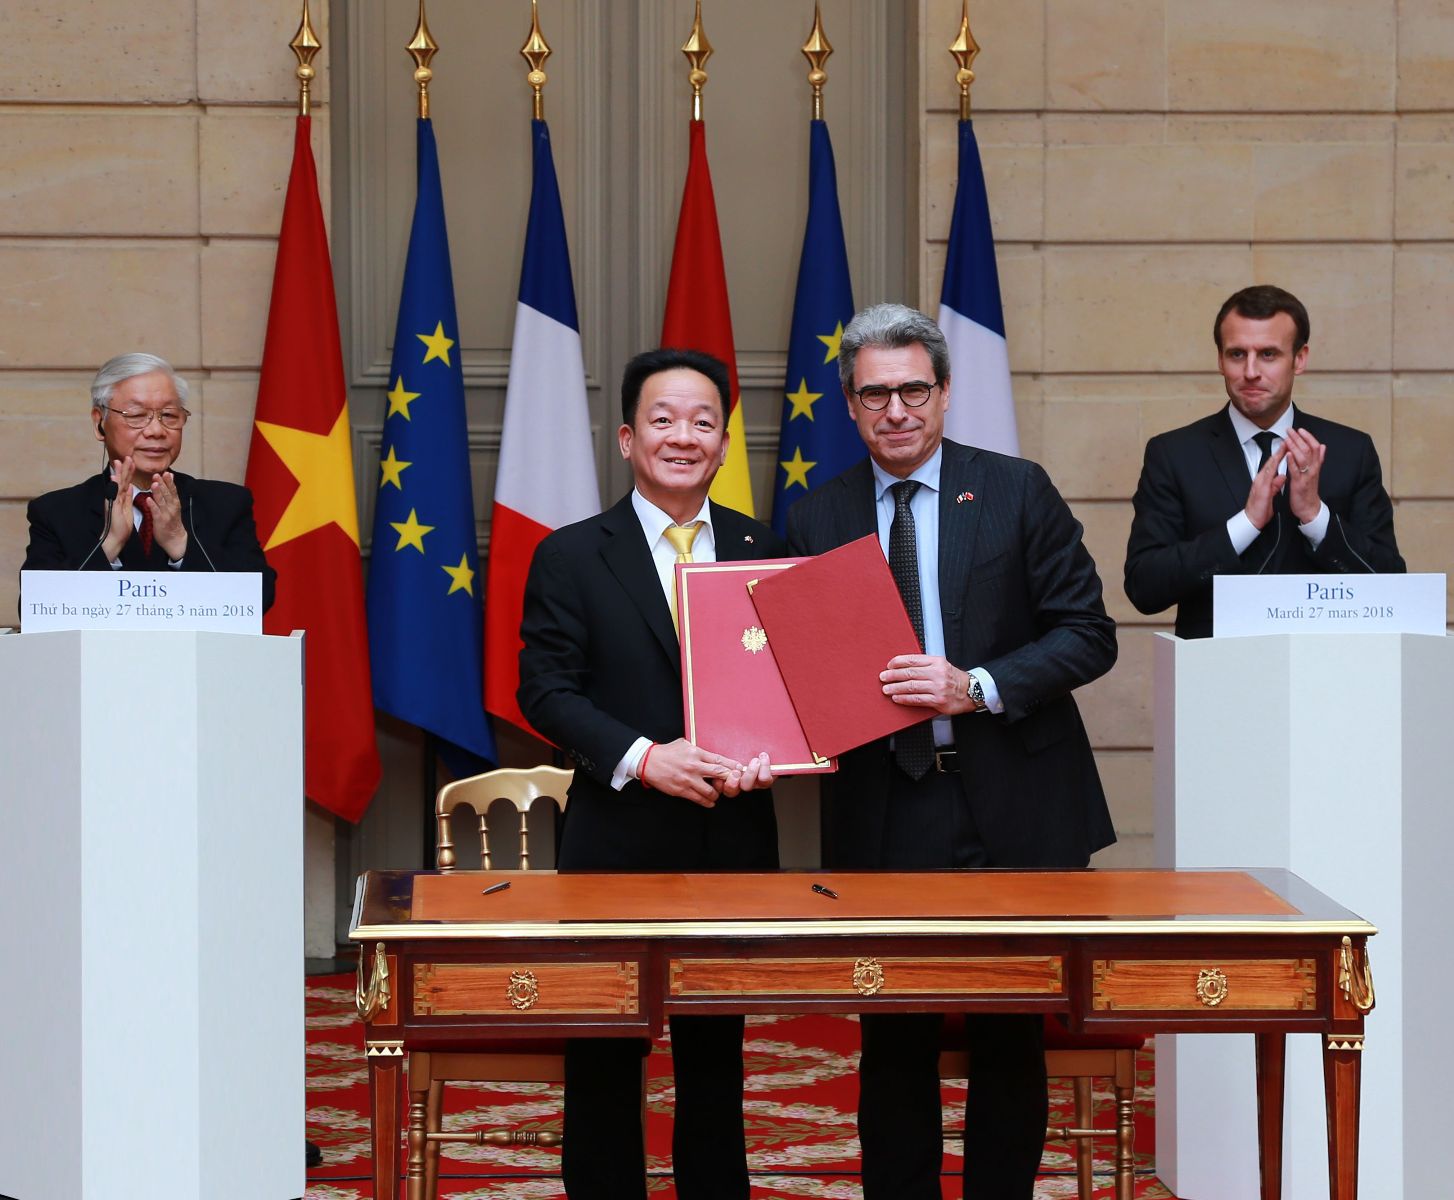 Tập đoàn T&T và Tập đoàn Bouygues của Pháp ký kết biên bản ghi nhớ hợp tác về Dự án Đường sắt đô thị số 3 dưới sự chứng kiến của Tổng Bí thư Nguyễn Phú Trọng và Tổng thống Cộng hòa Pháp Emmanuel Macron tại cung điện Elysees.